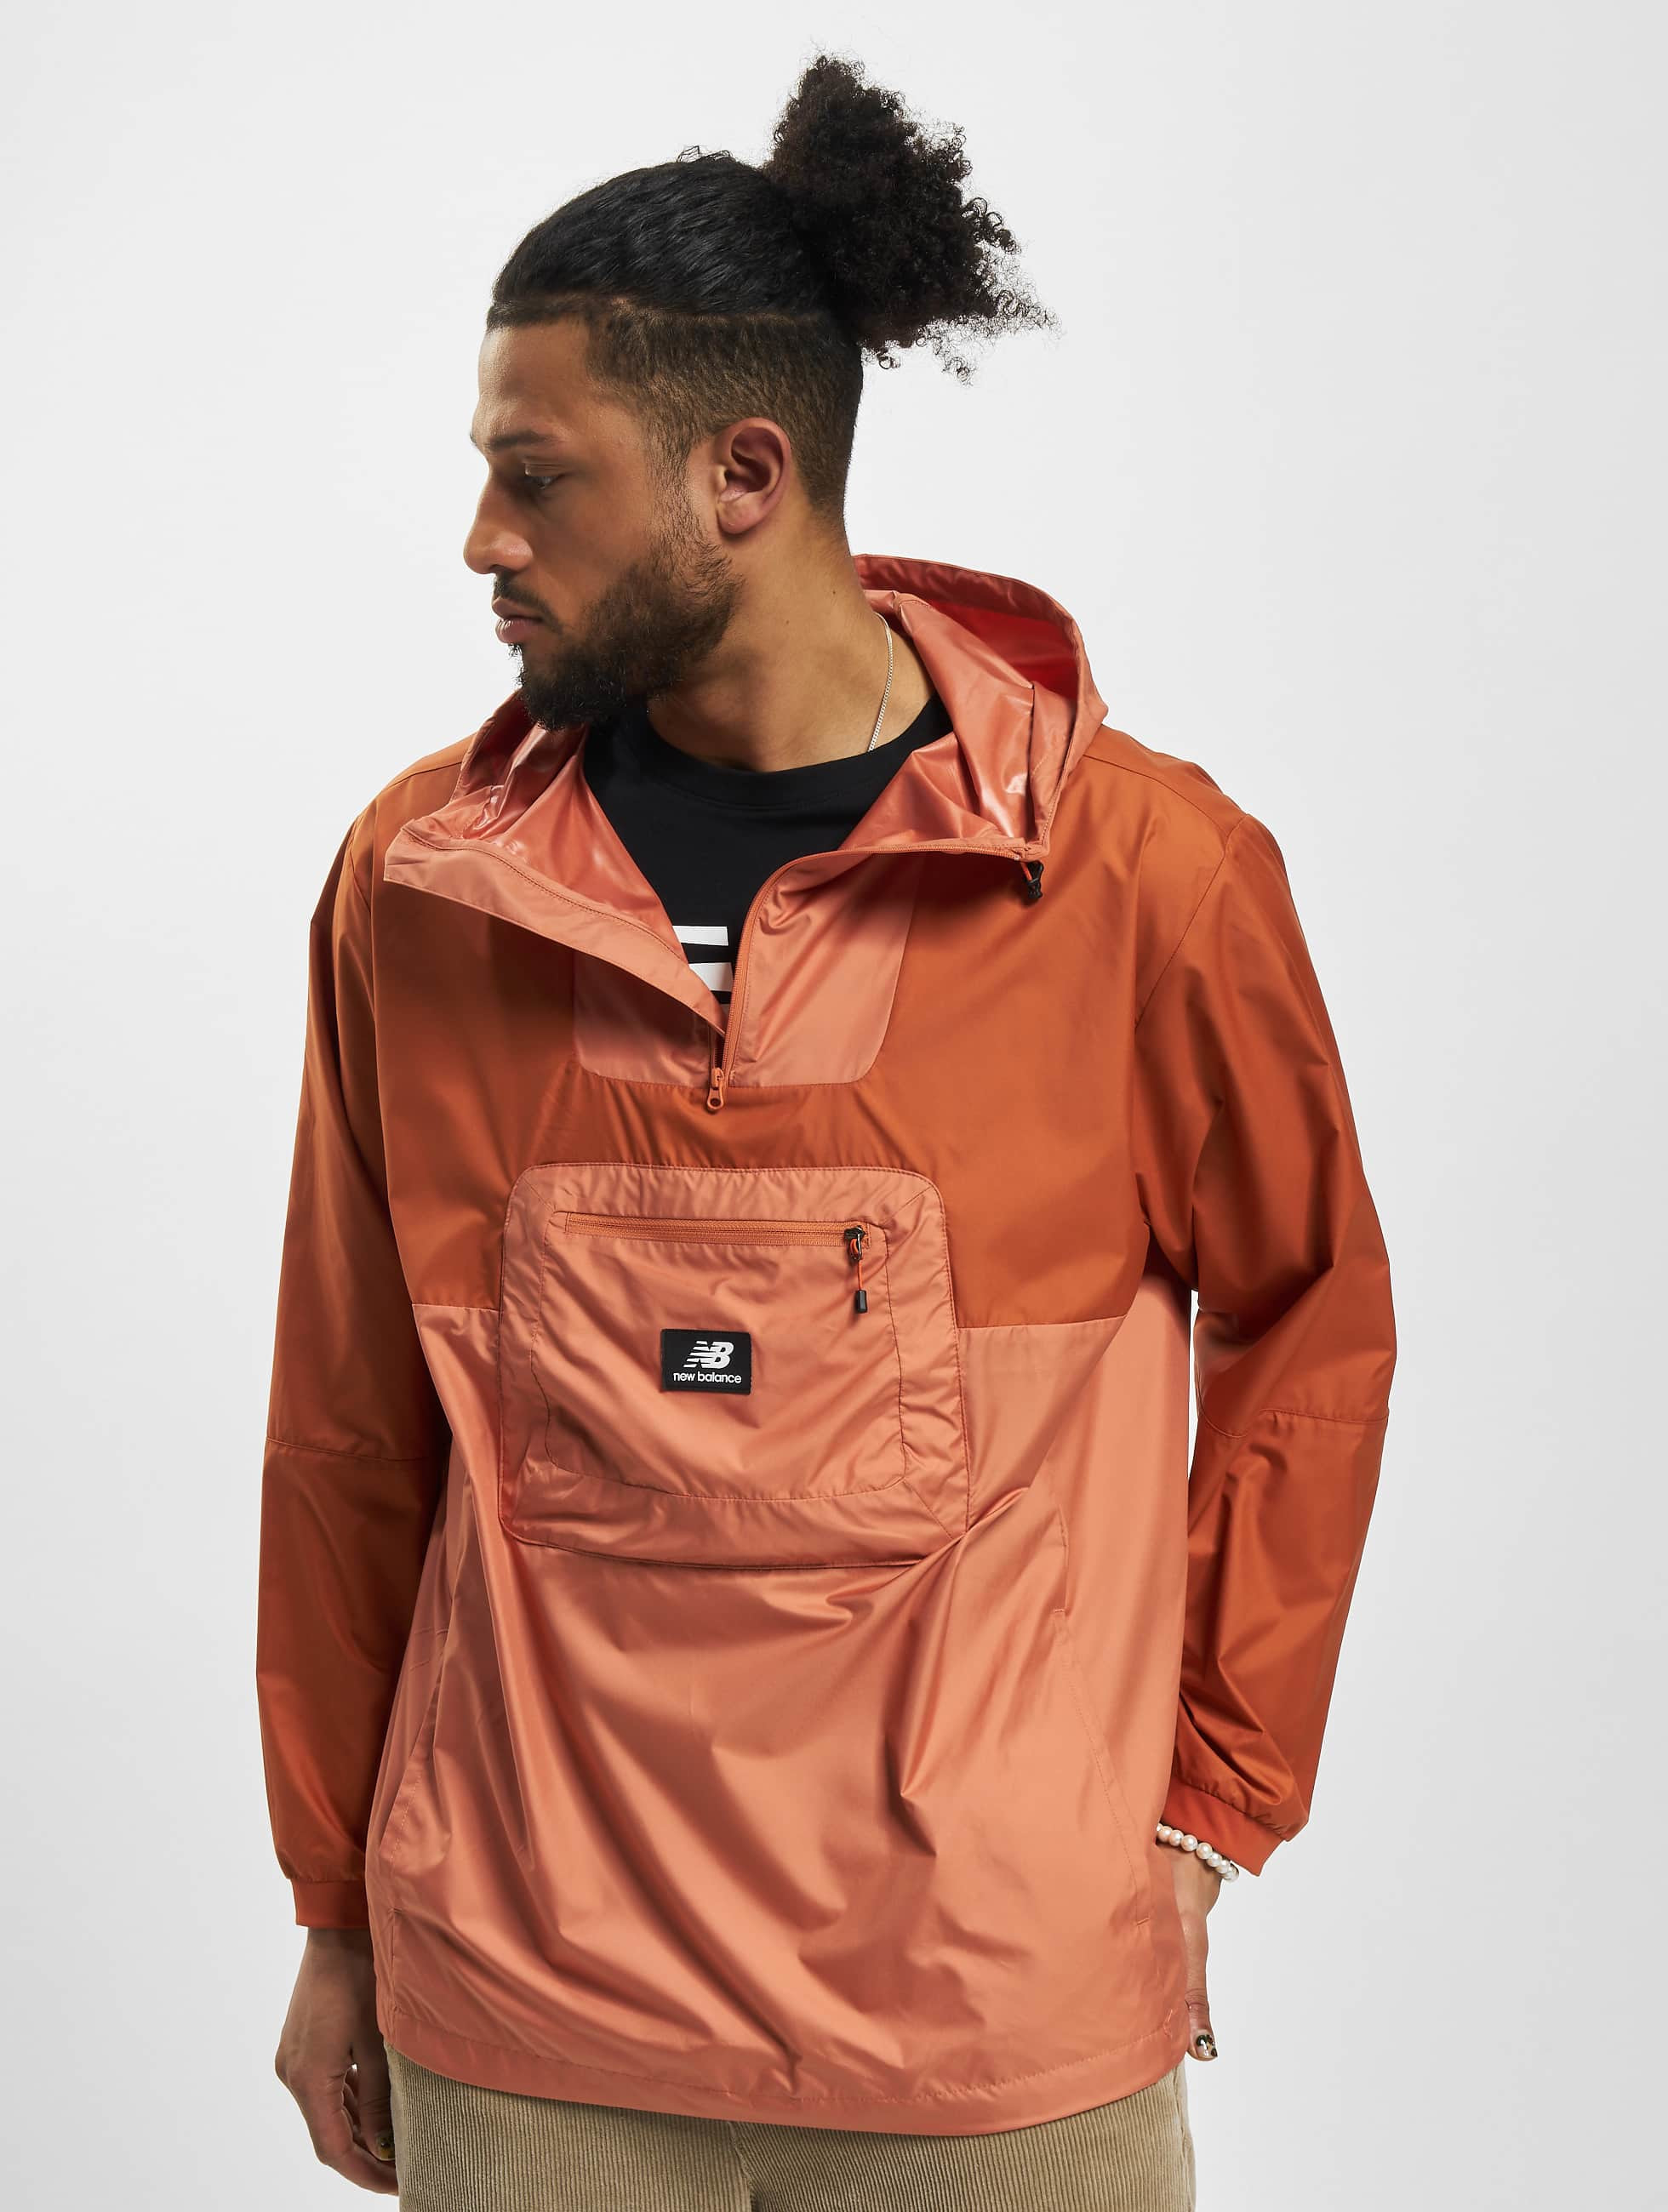 Heerlijk Plantkunde Beleefd New Balance Jacket / Lightweight Jacket All Terrain in orange 984182